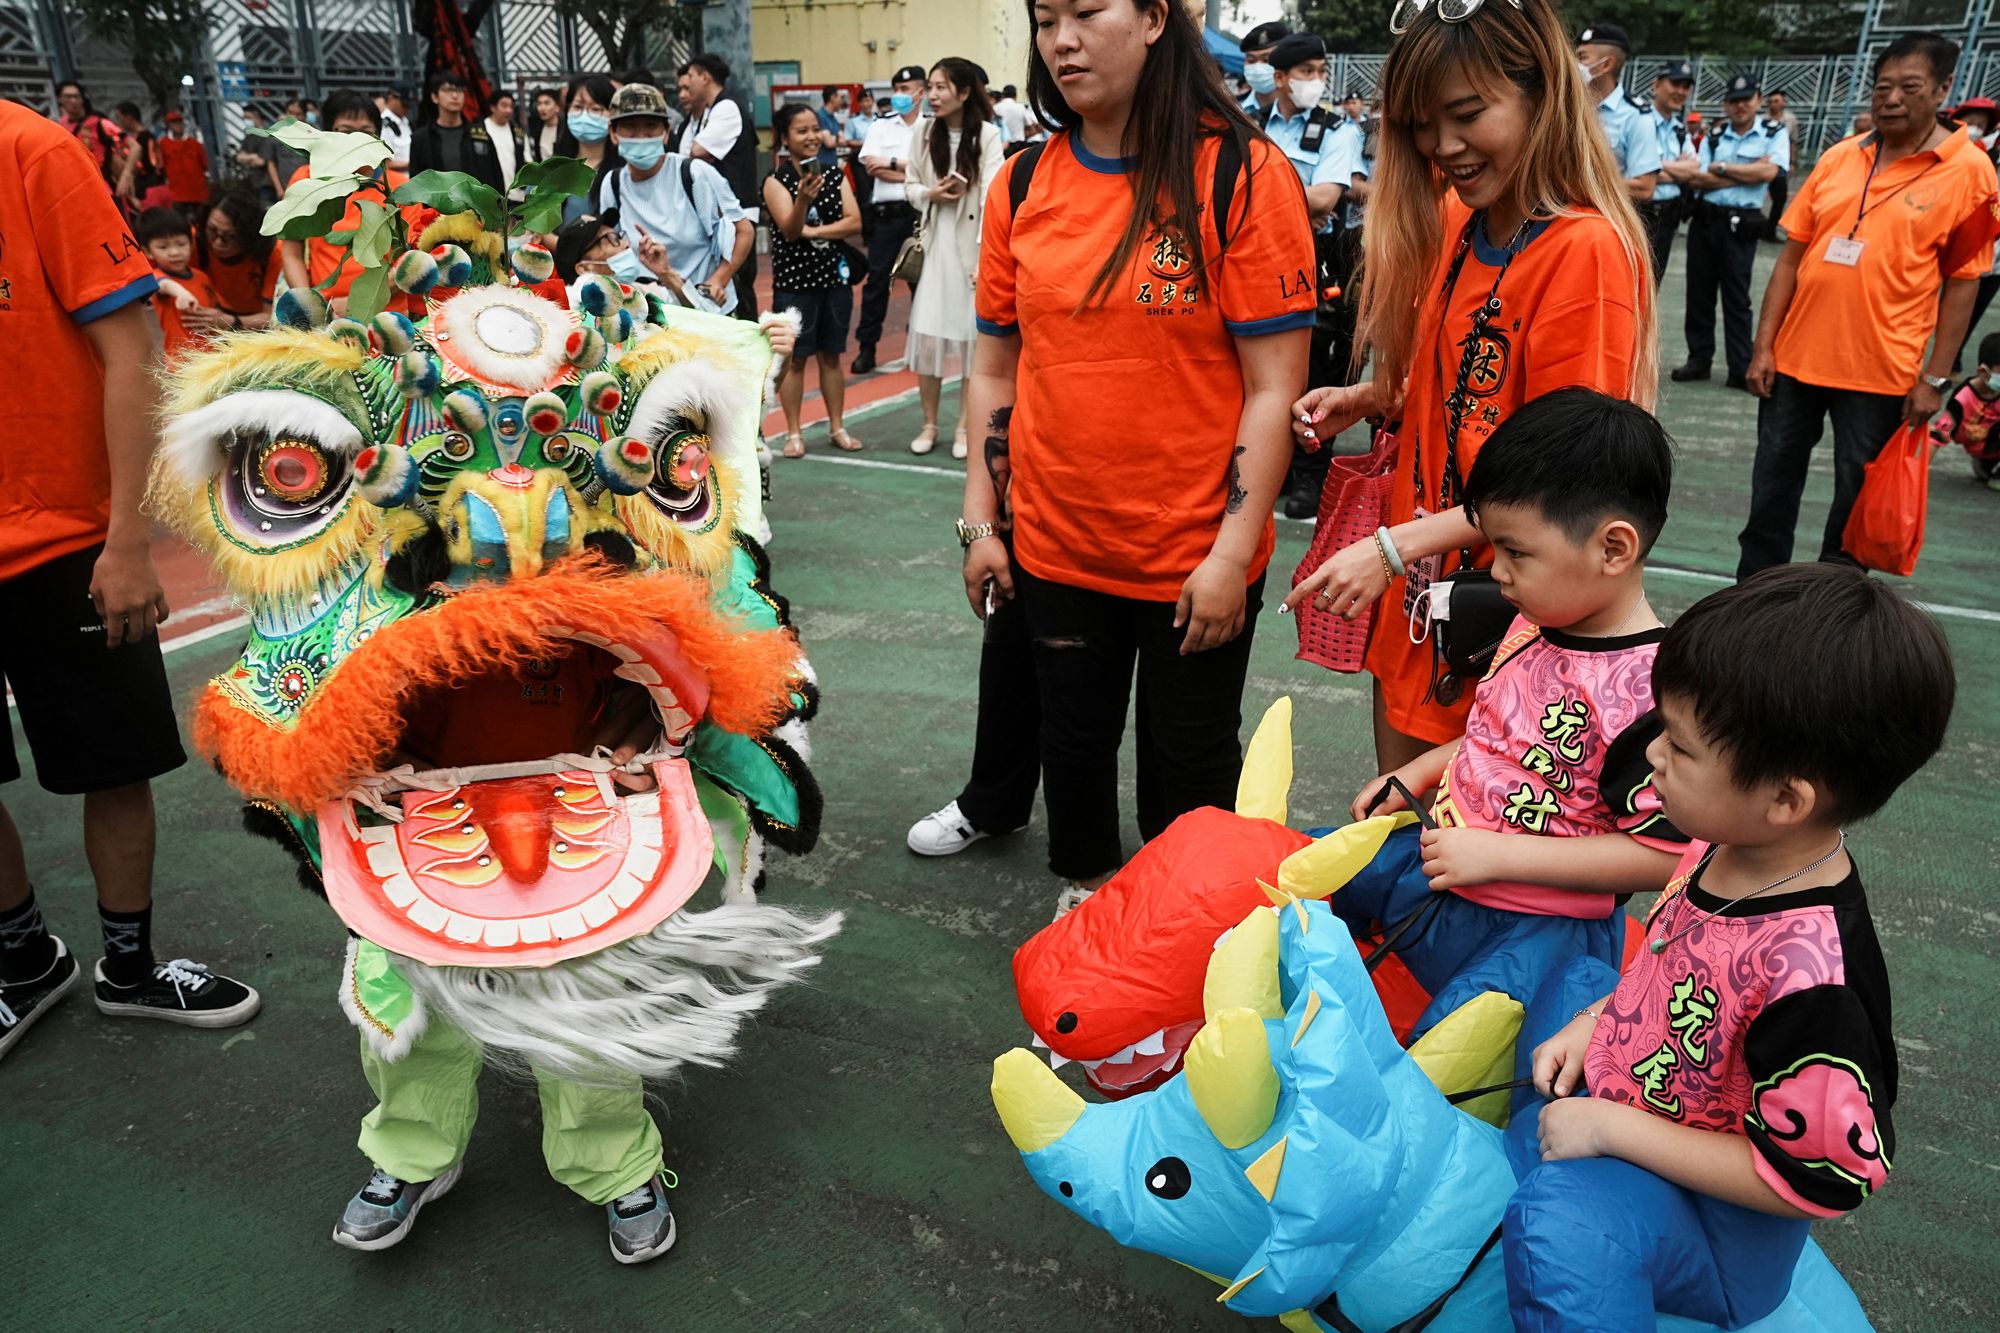 Tin Hau parade in Hong Kong